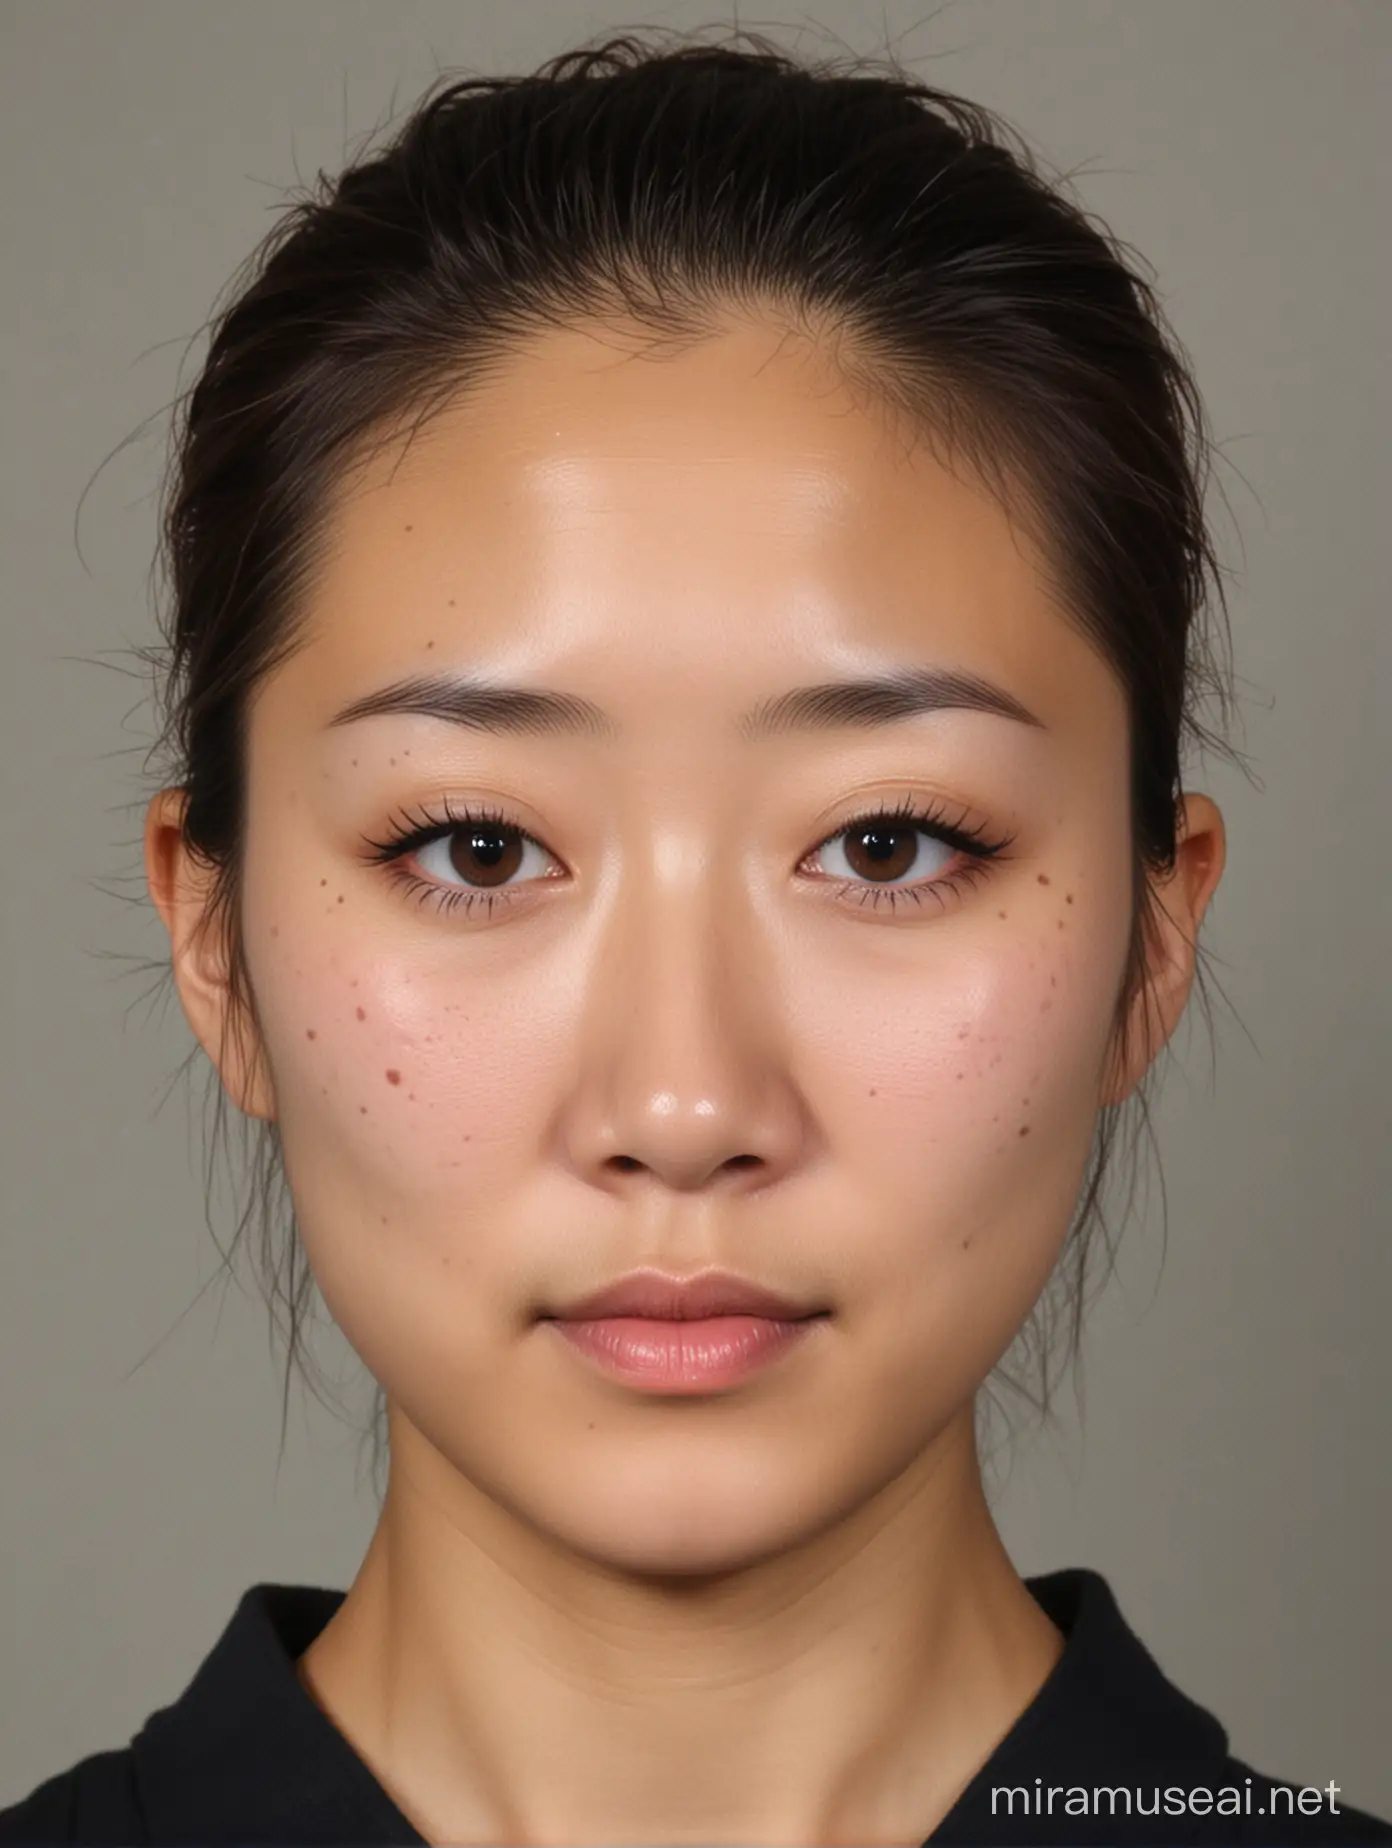 一张中国女性的证件照， 单眼皮，丹凤眼，嘴比较小，鼻子有一点塌，头发在脑后扎起来，大概32岁